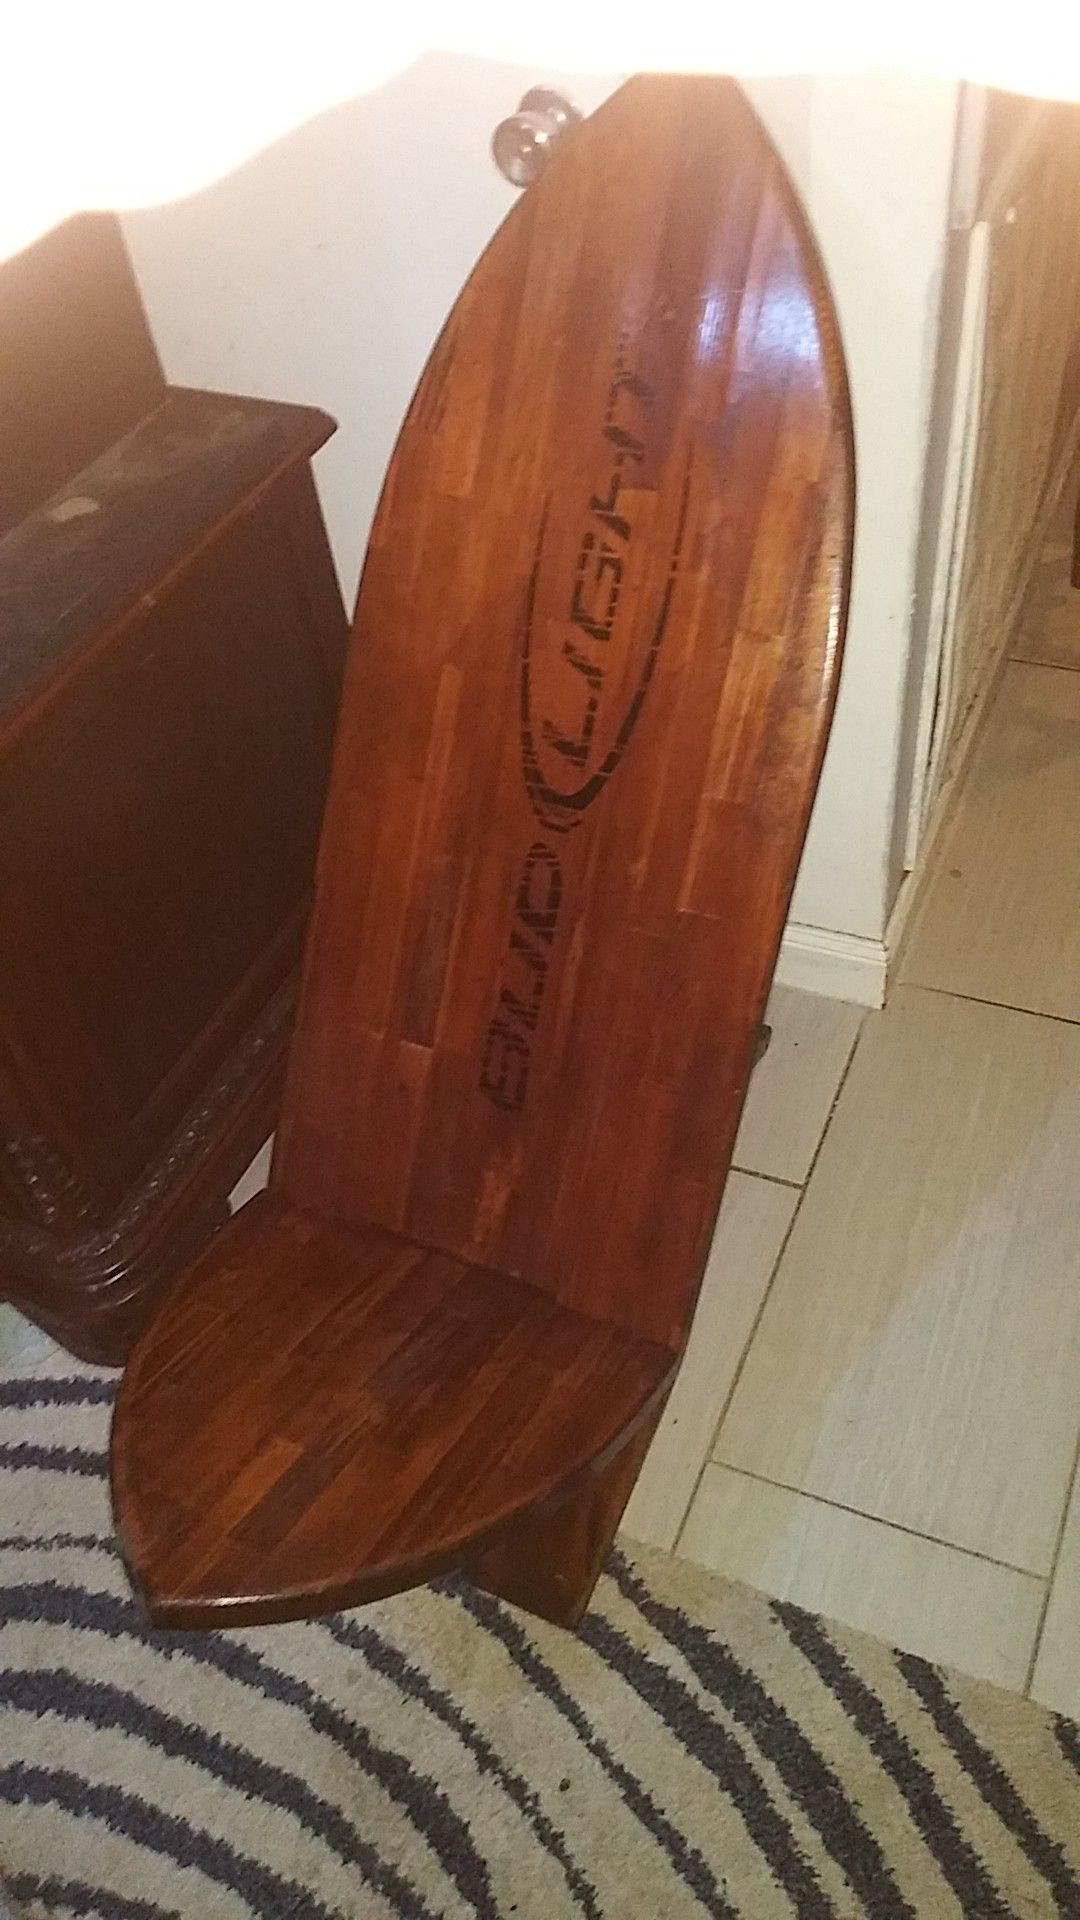 Bud Light surfboard chair $50